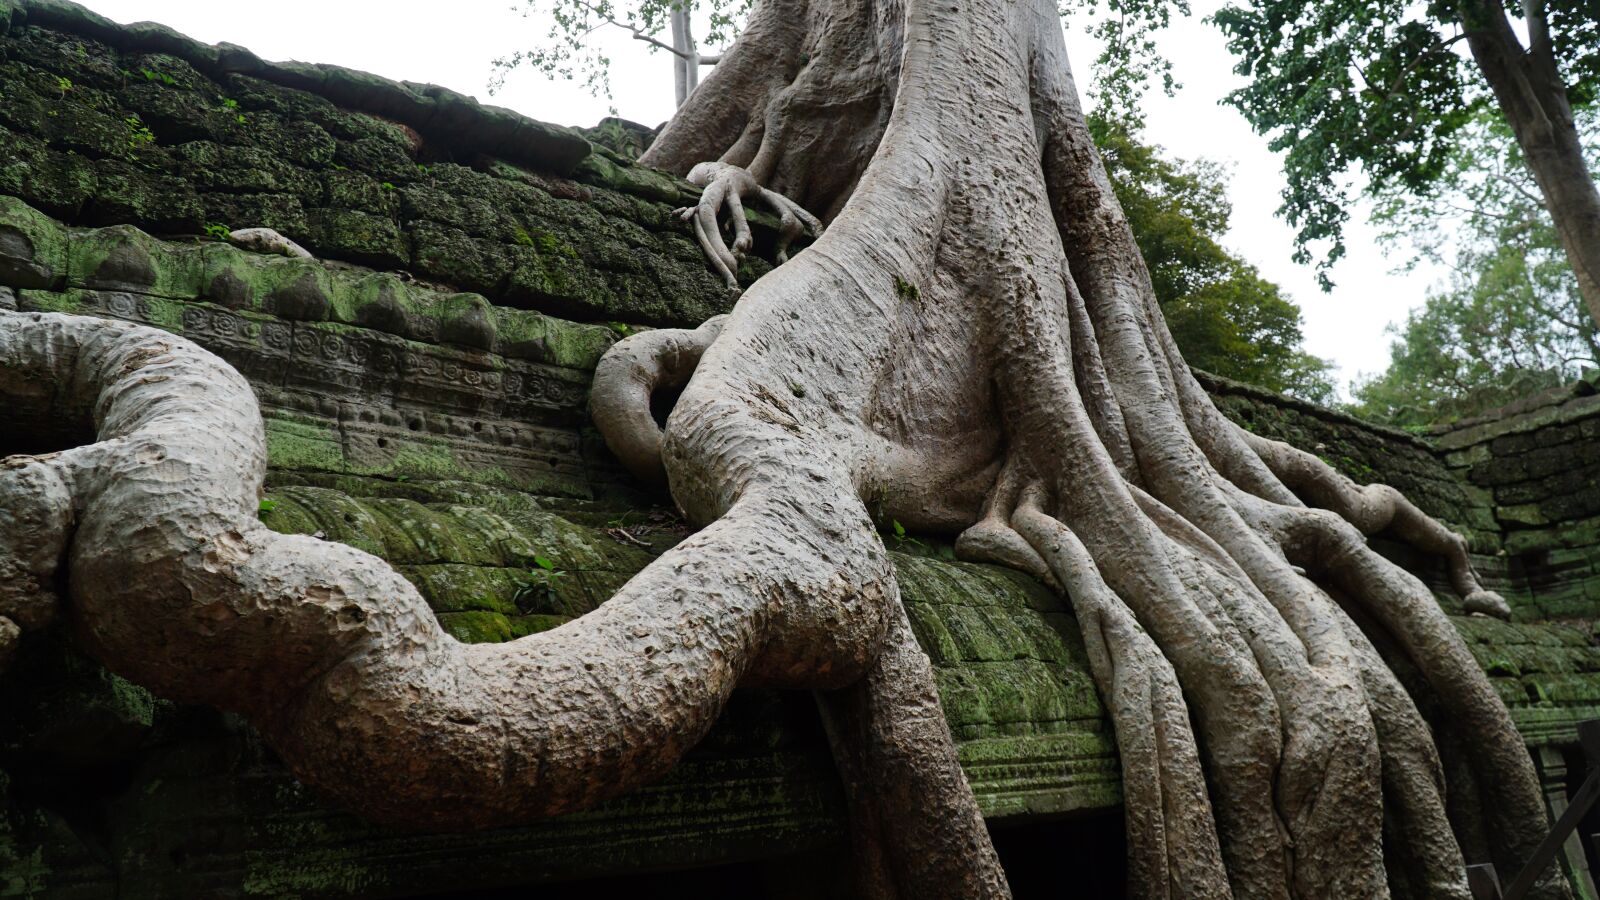 Sony a6300 sample photo. Old tree, monkey, cambodia photography